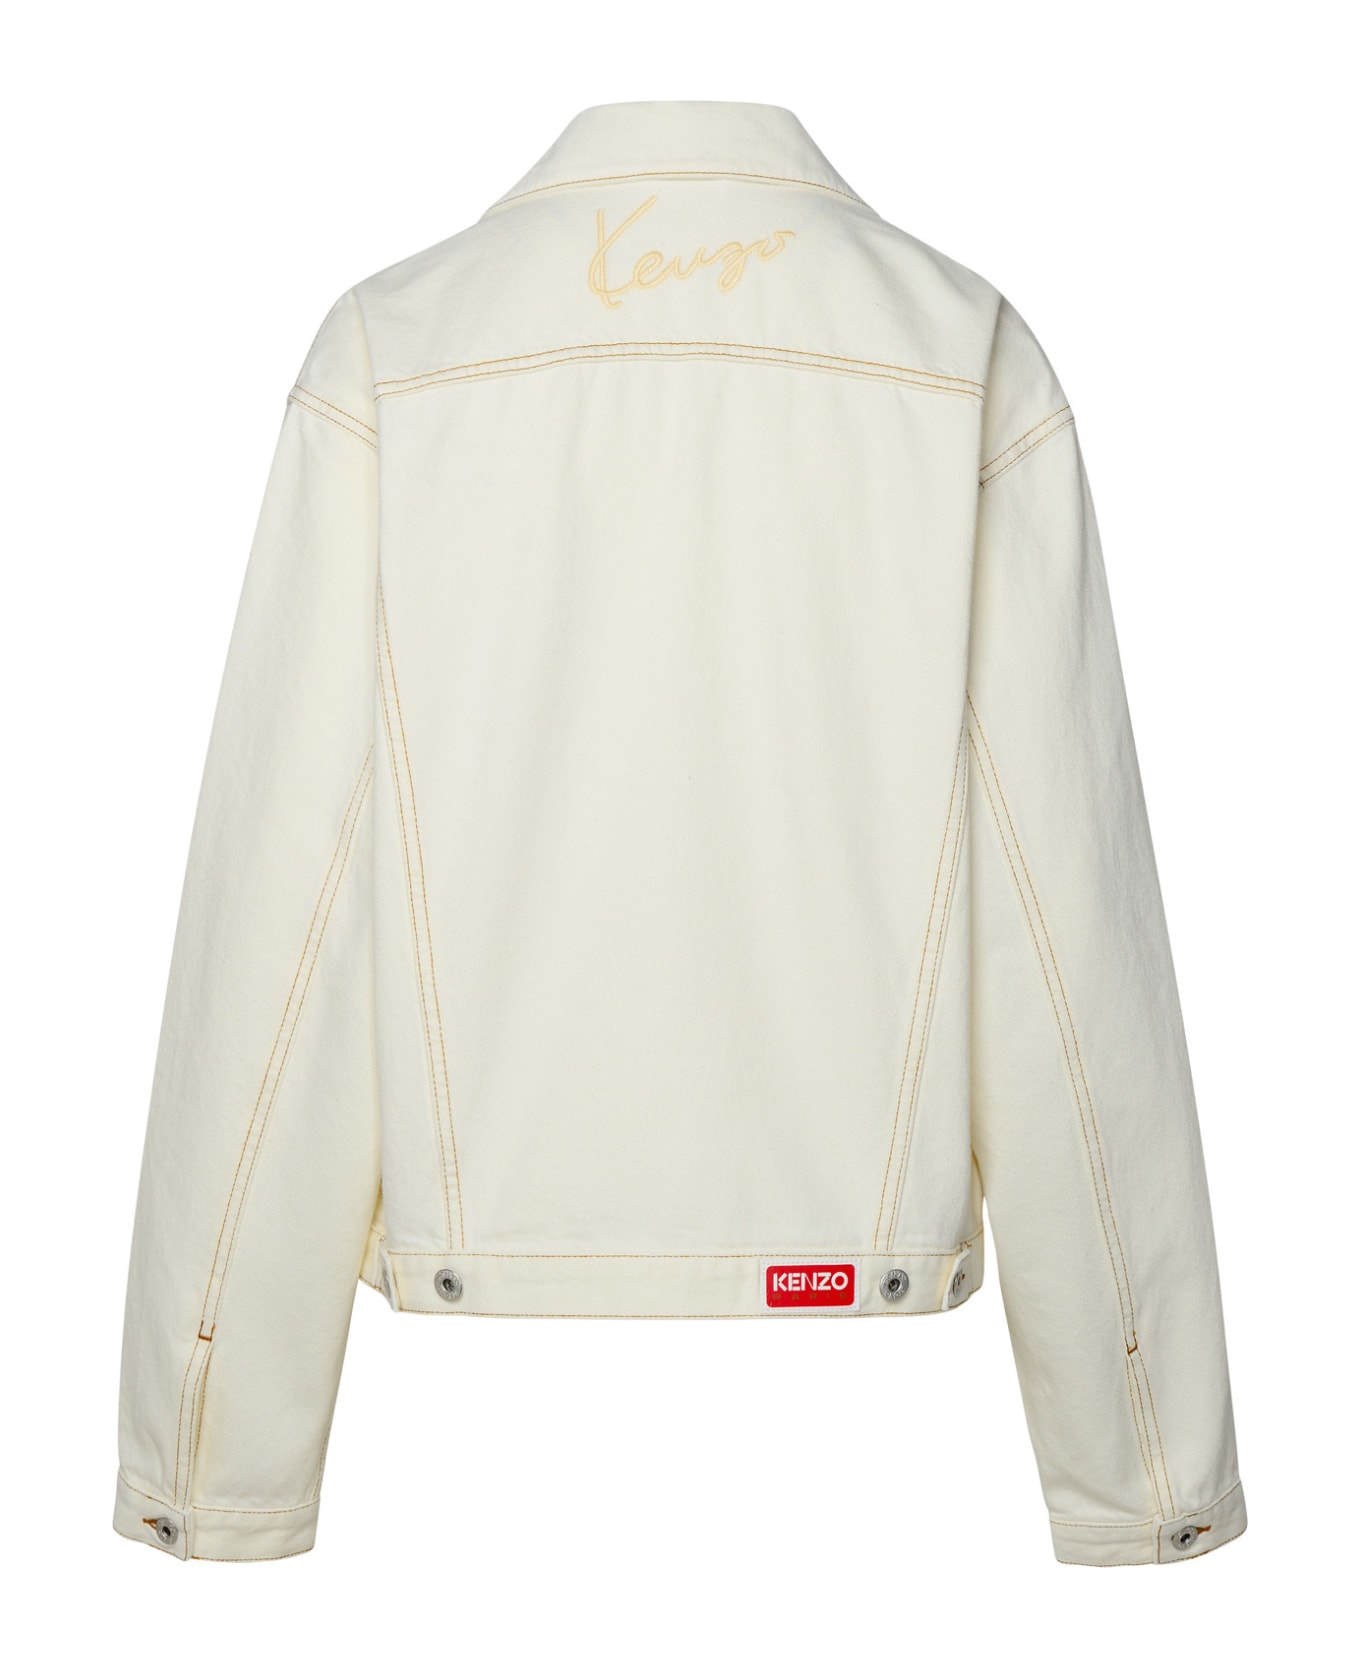 Kenzo Ivory Cotton Jacket - Ivory